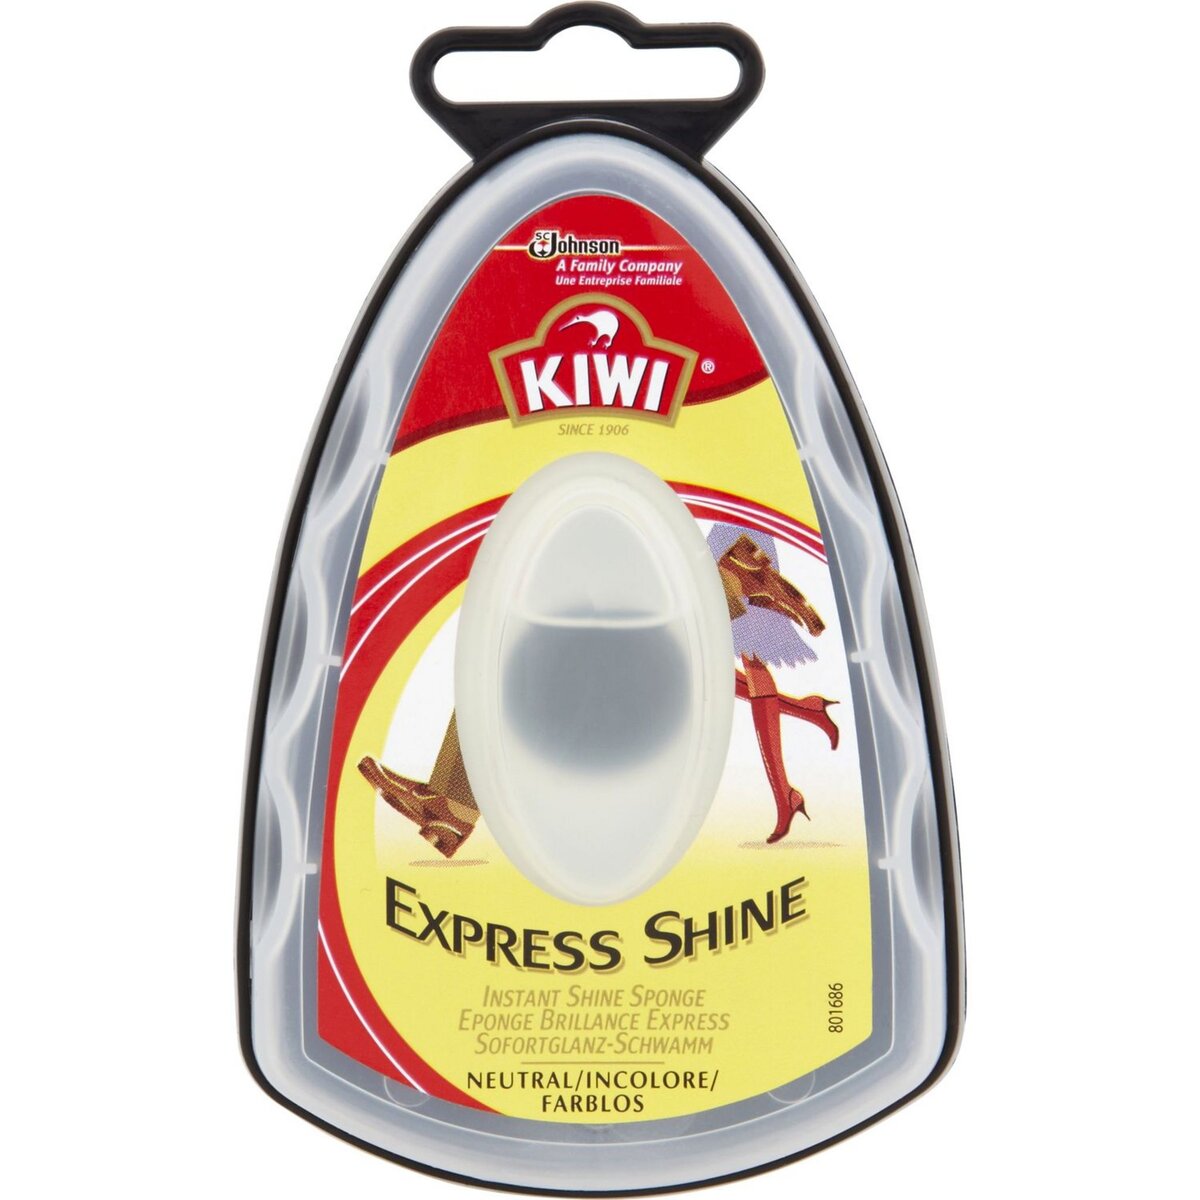 KIWI Kiwi éponge express shine incolore x1